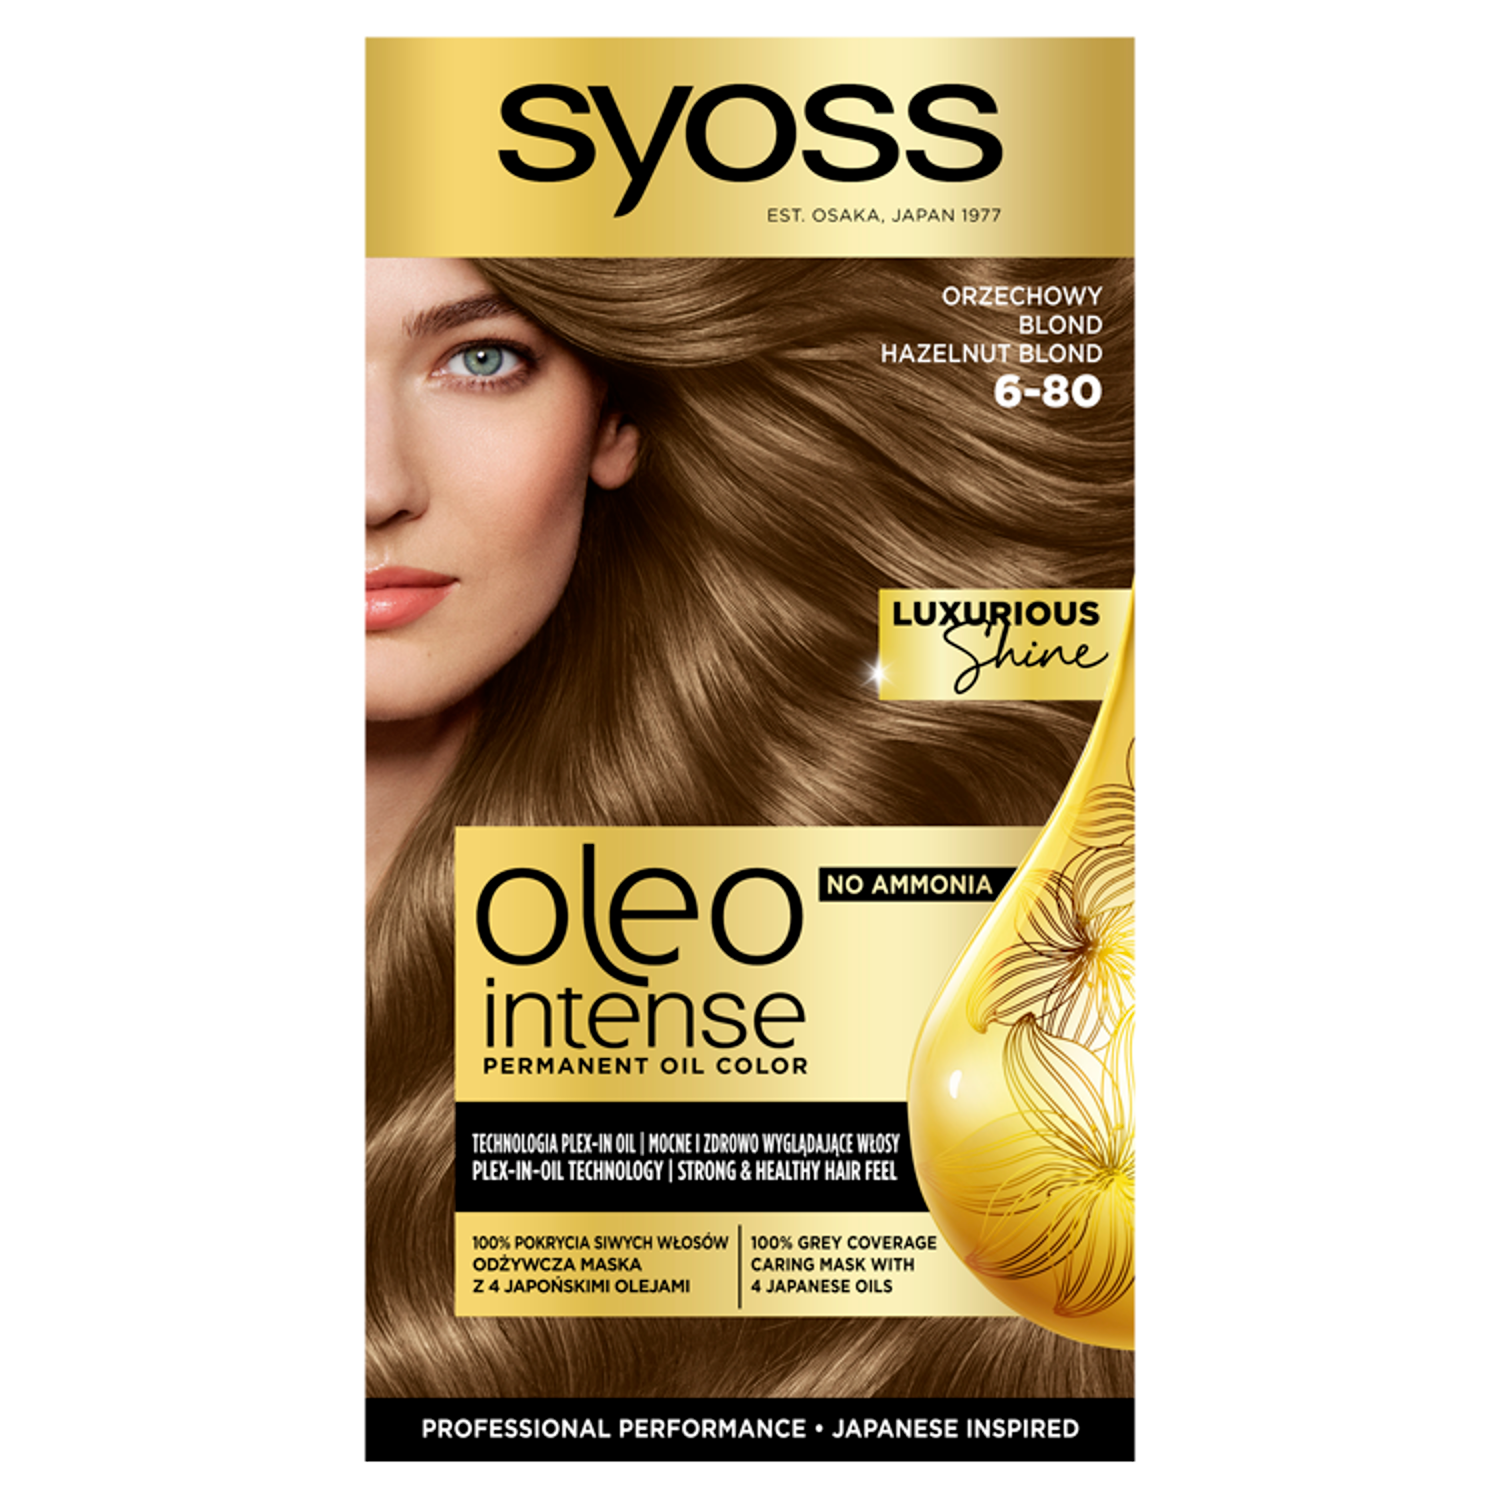 Syoss Oleo Intense краска для волос 6-80 ореховый блонд без аммиака, 1упаковка – заказать из-за границы с доставкой в «CDEK.Shopping»